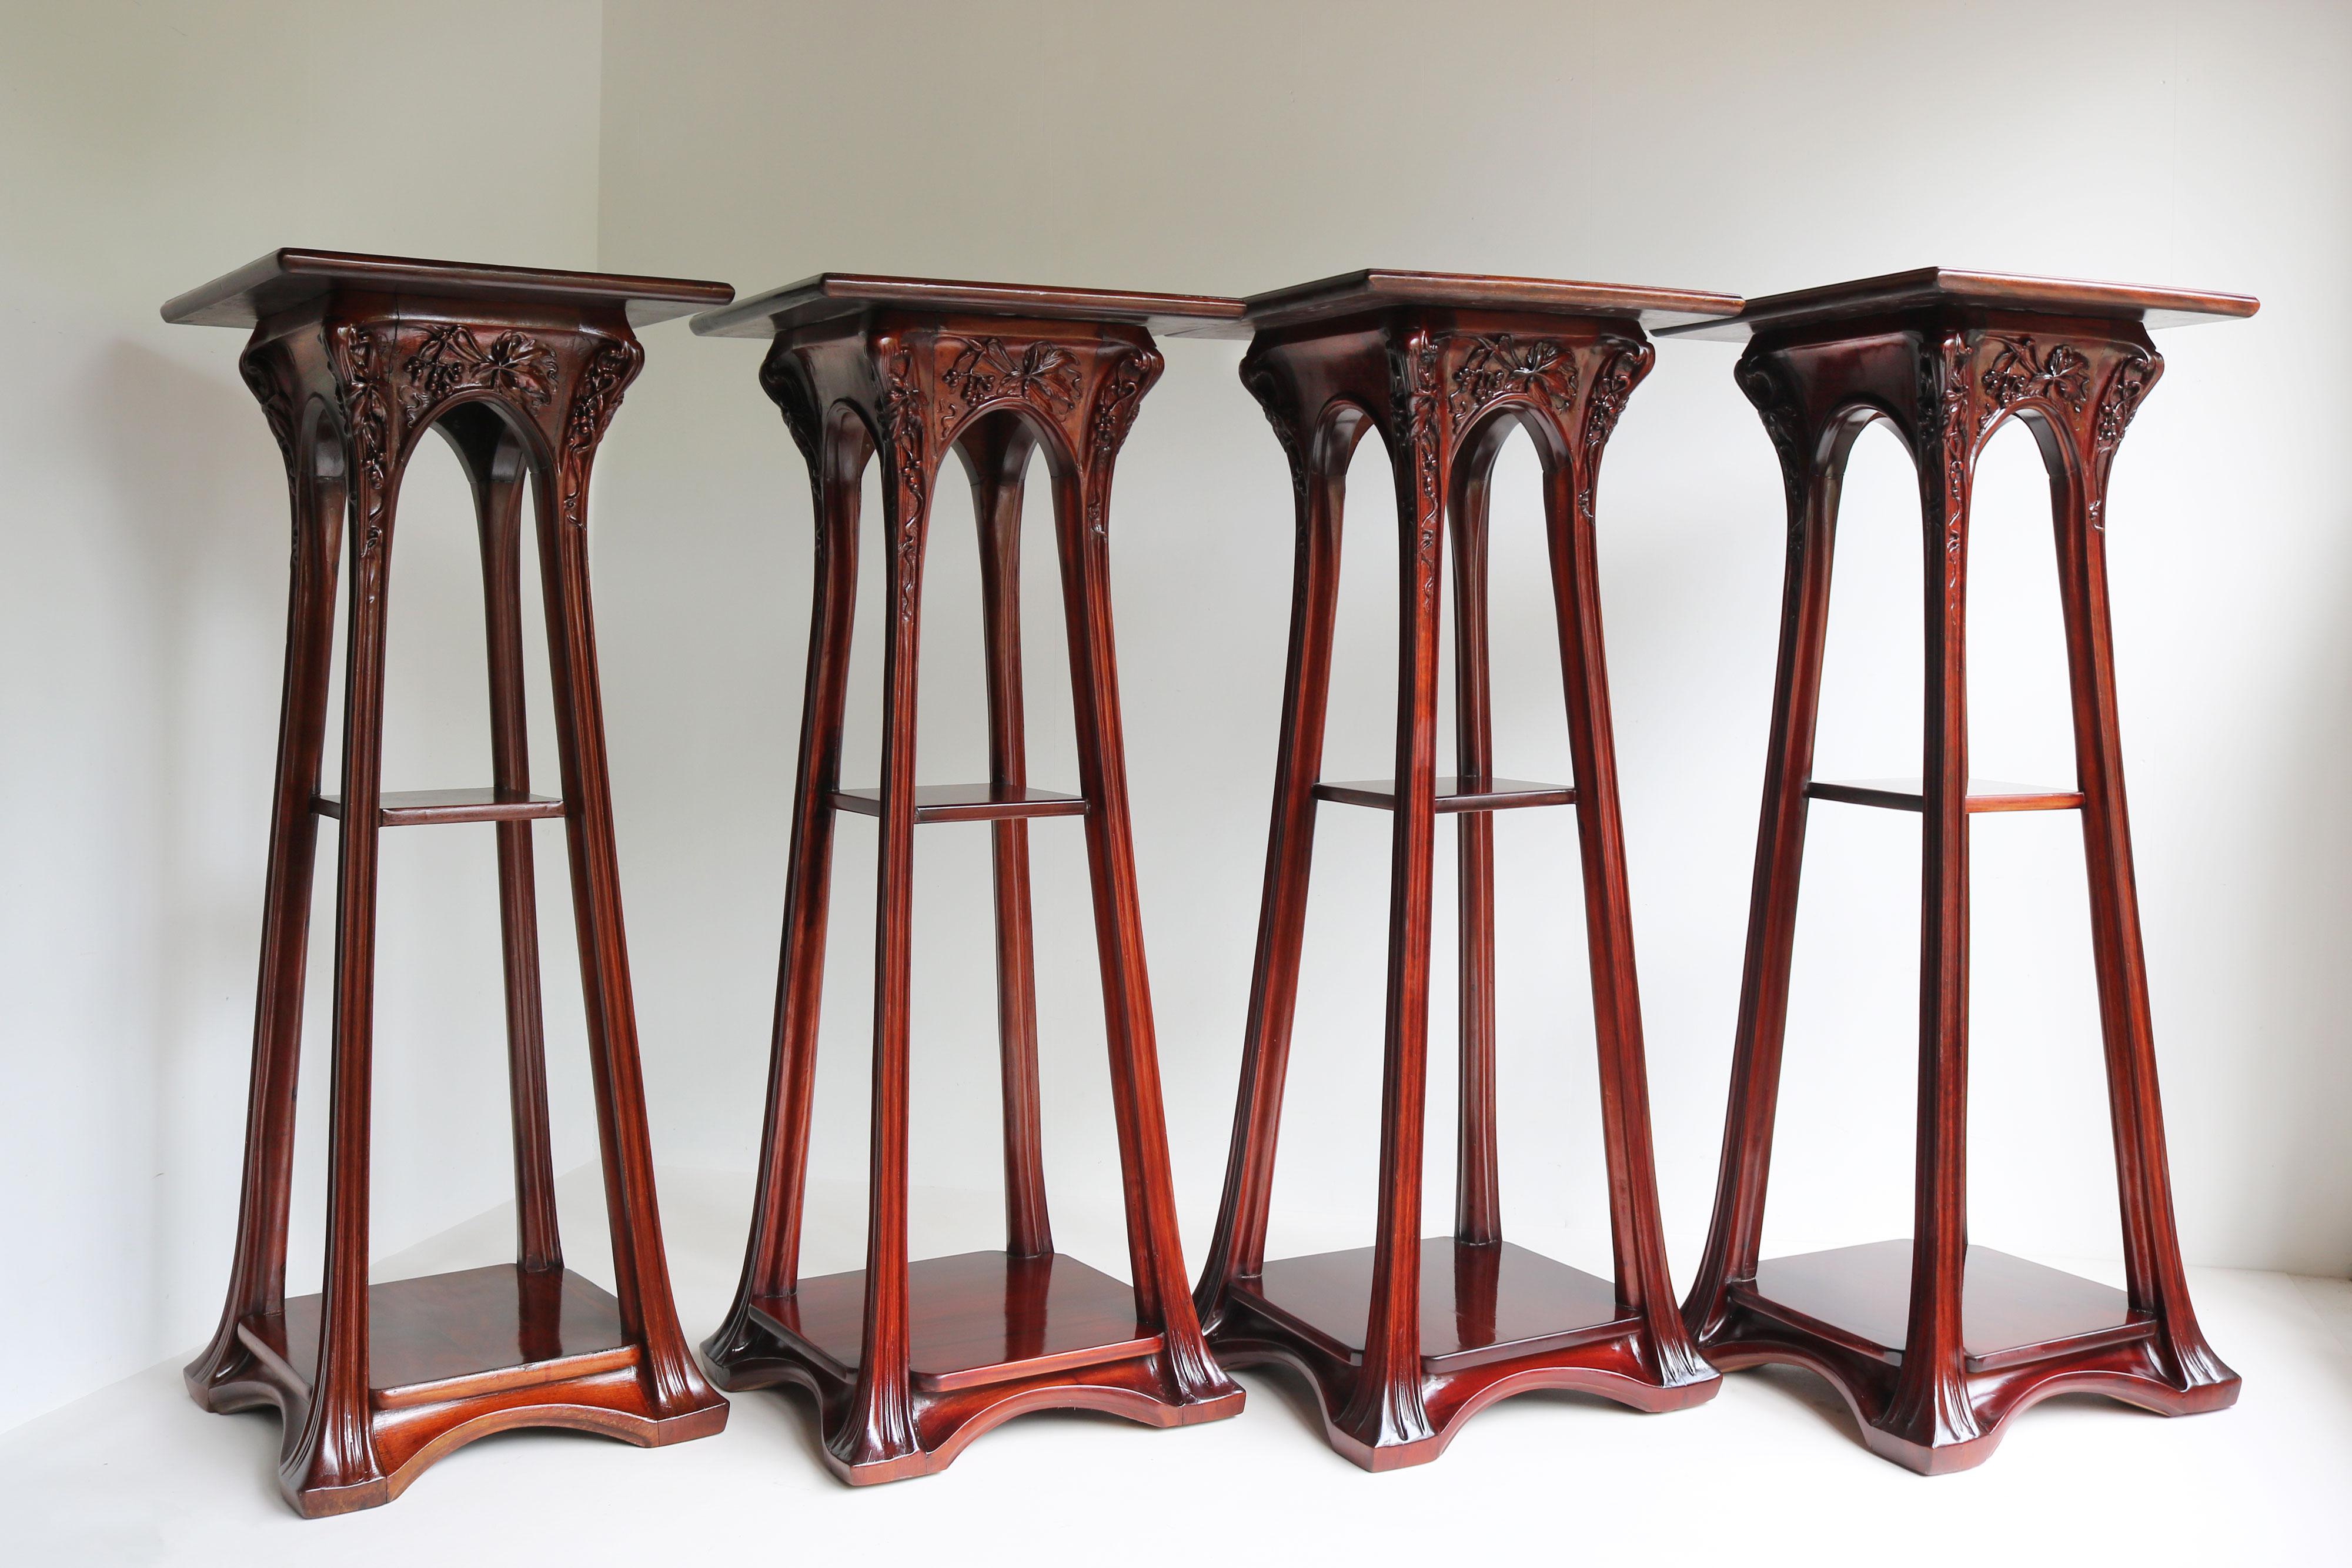 4 matching Art Nouveau plant stands / pedestals by Louis Majorelle Antique 1907 For Sale 3